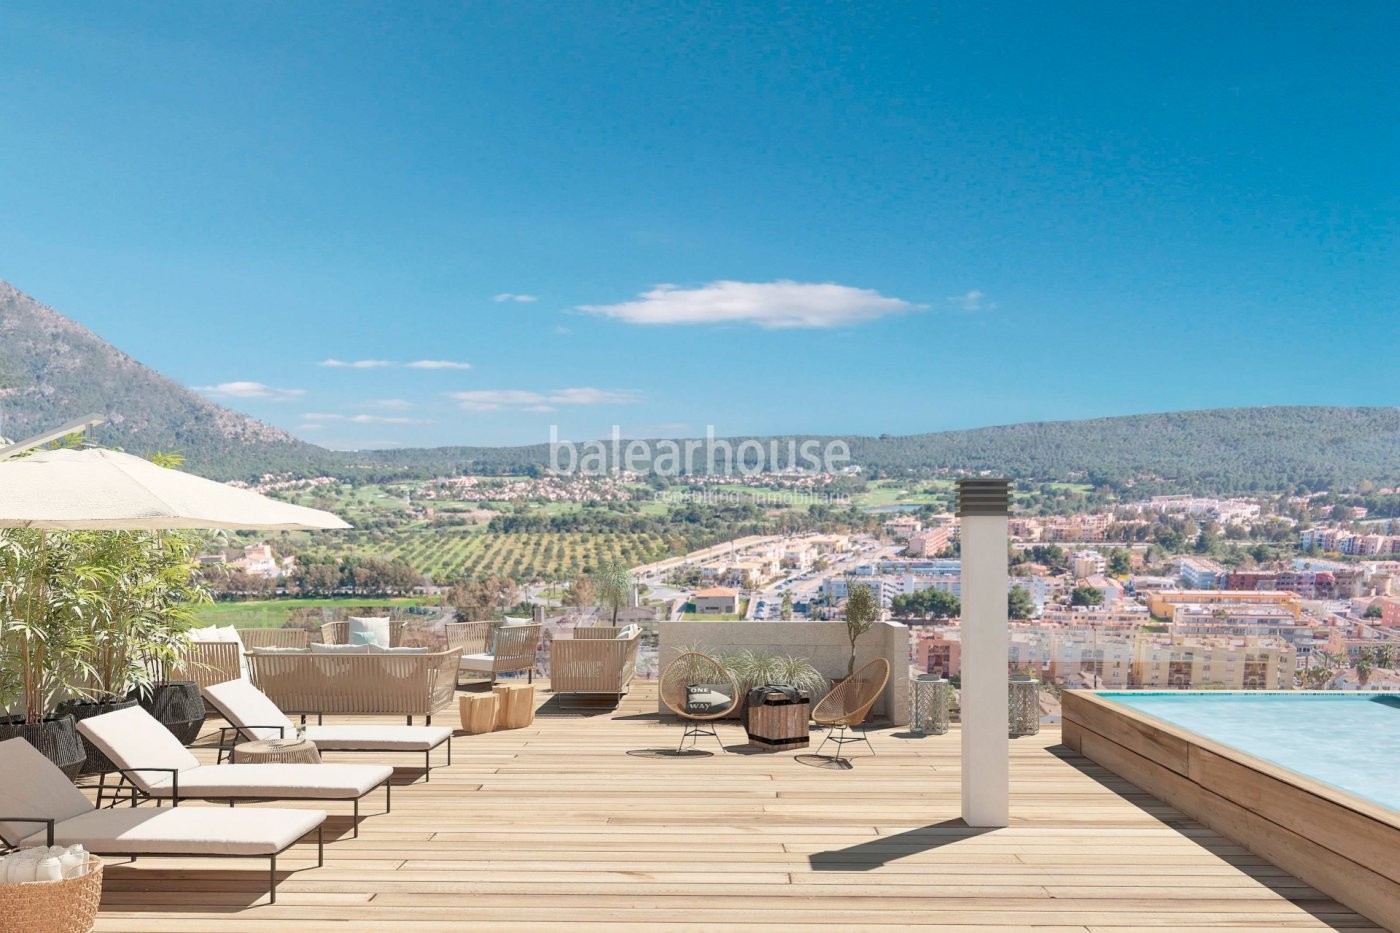 Modernas viviendas nuevas en Santa Ponsa con terrazas, jardín, piscina y vistas despejadas.